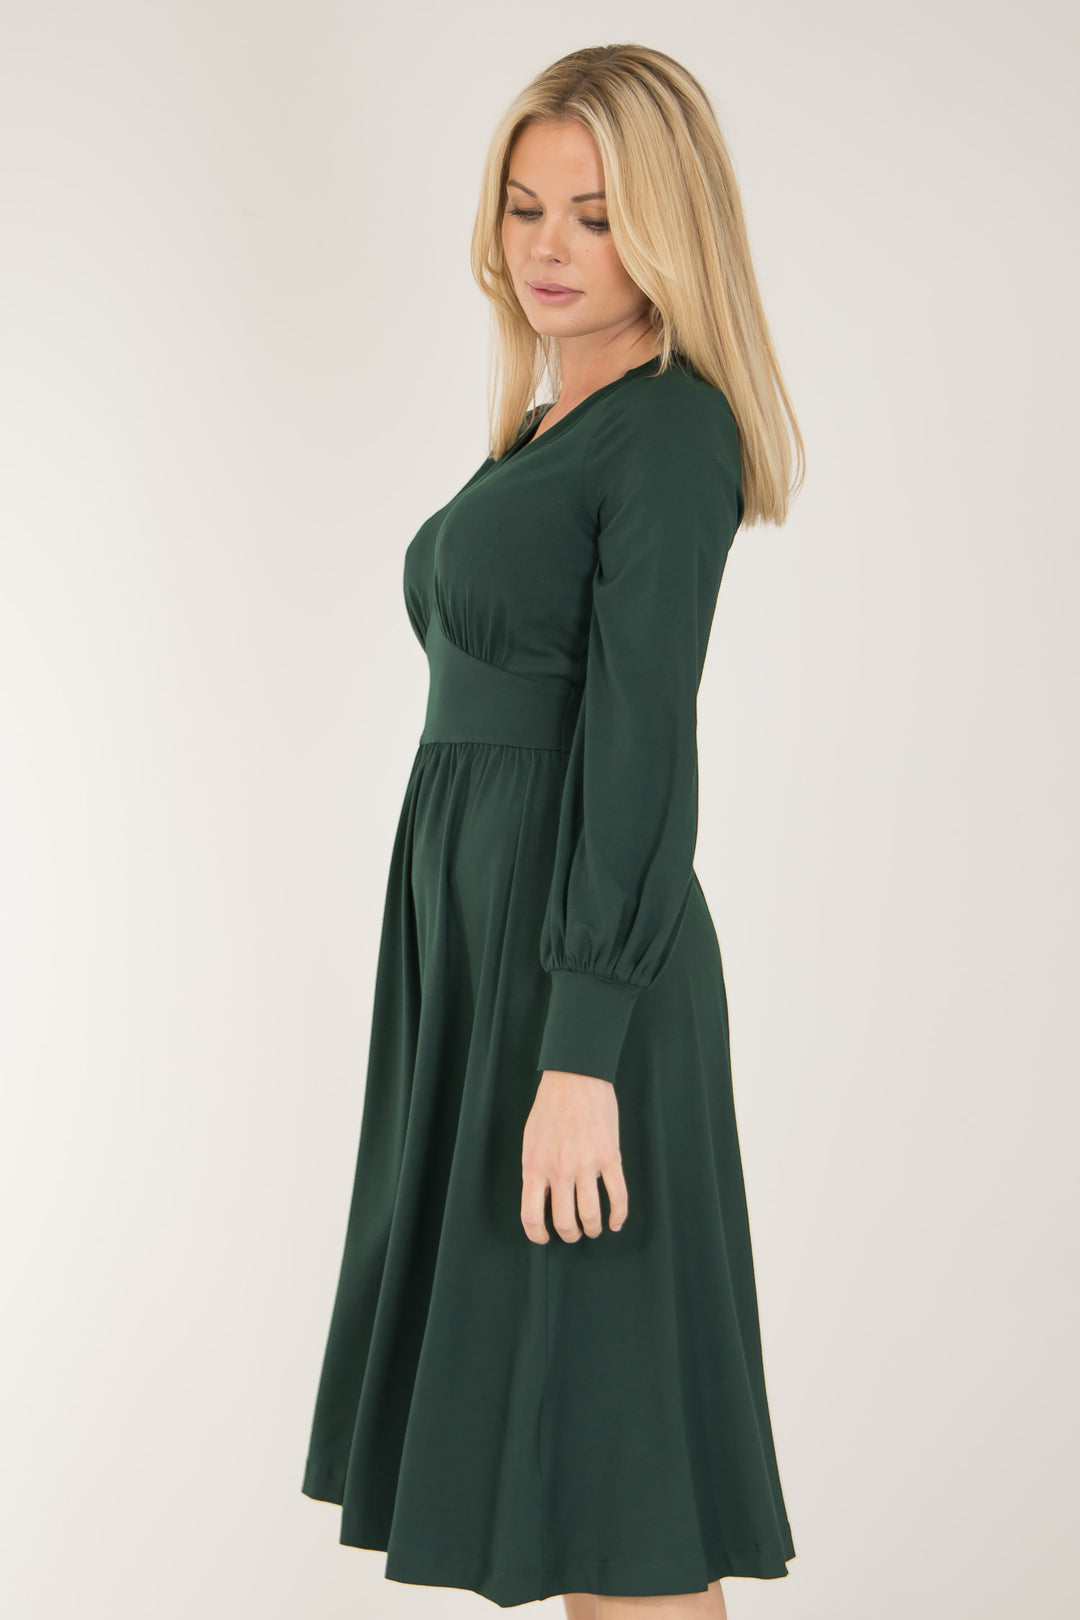 Nina jersey dress - Bottle green - Knälång, grön klänning i trikå